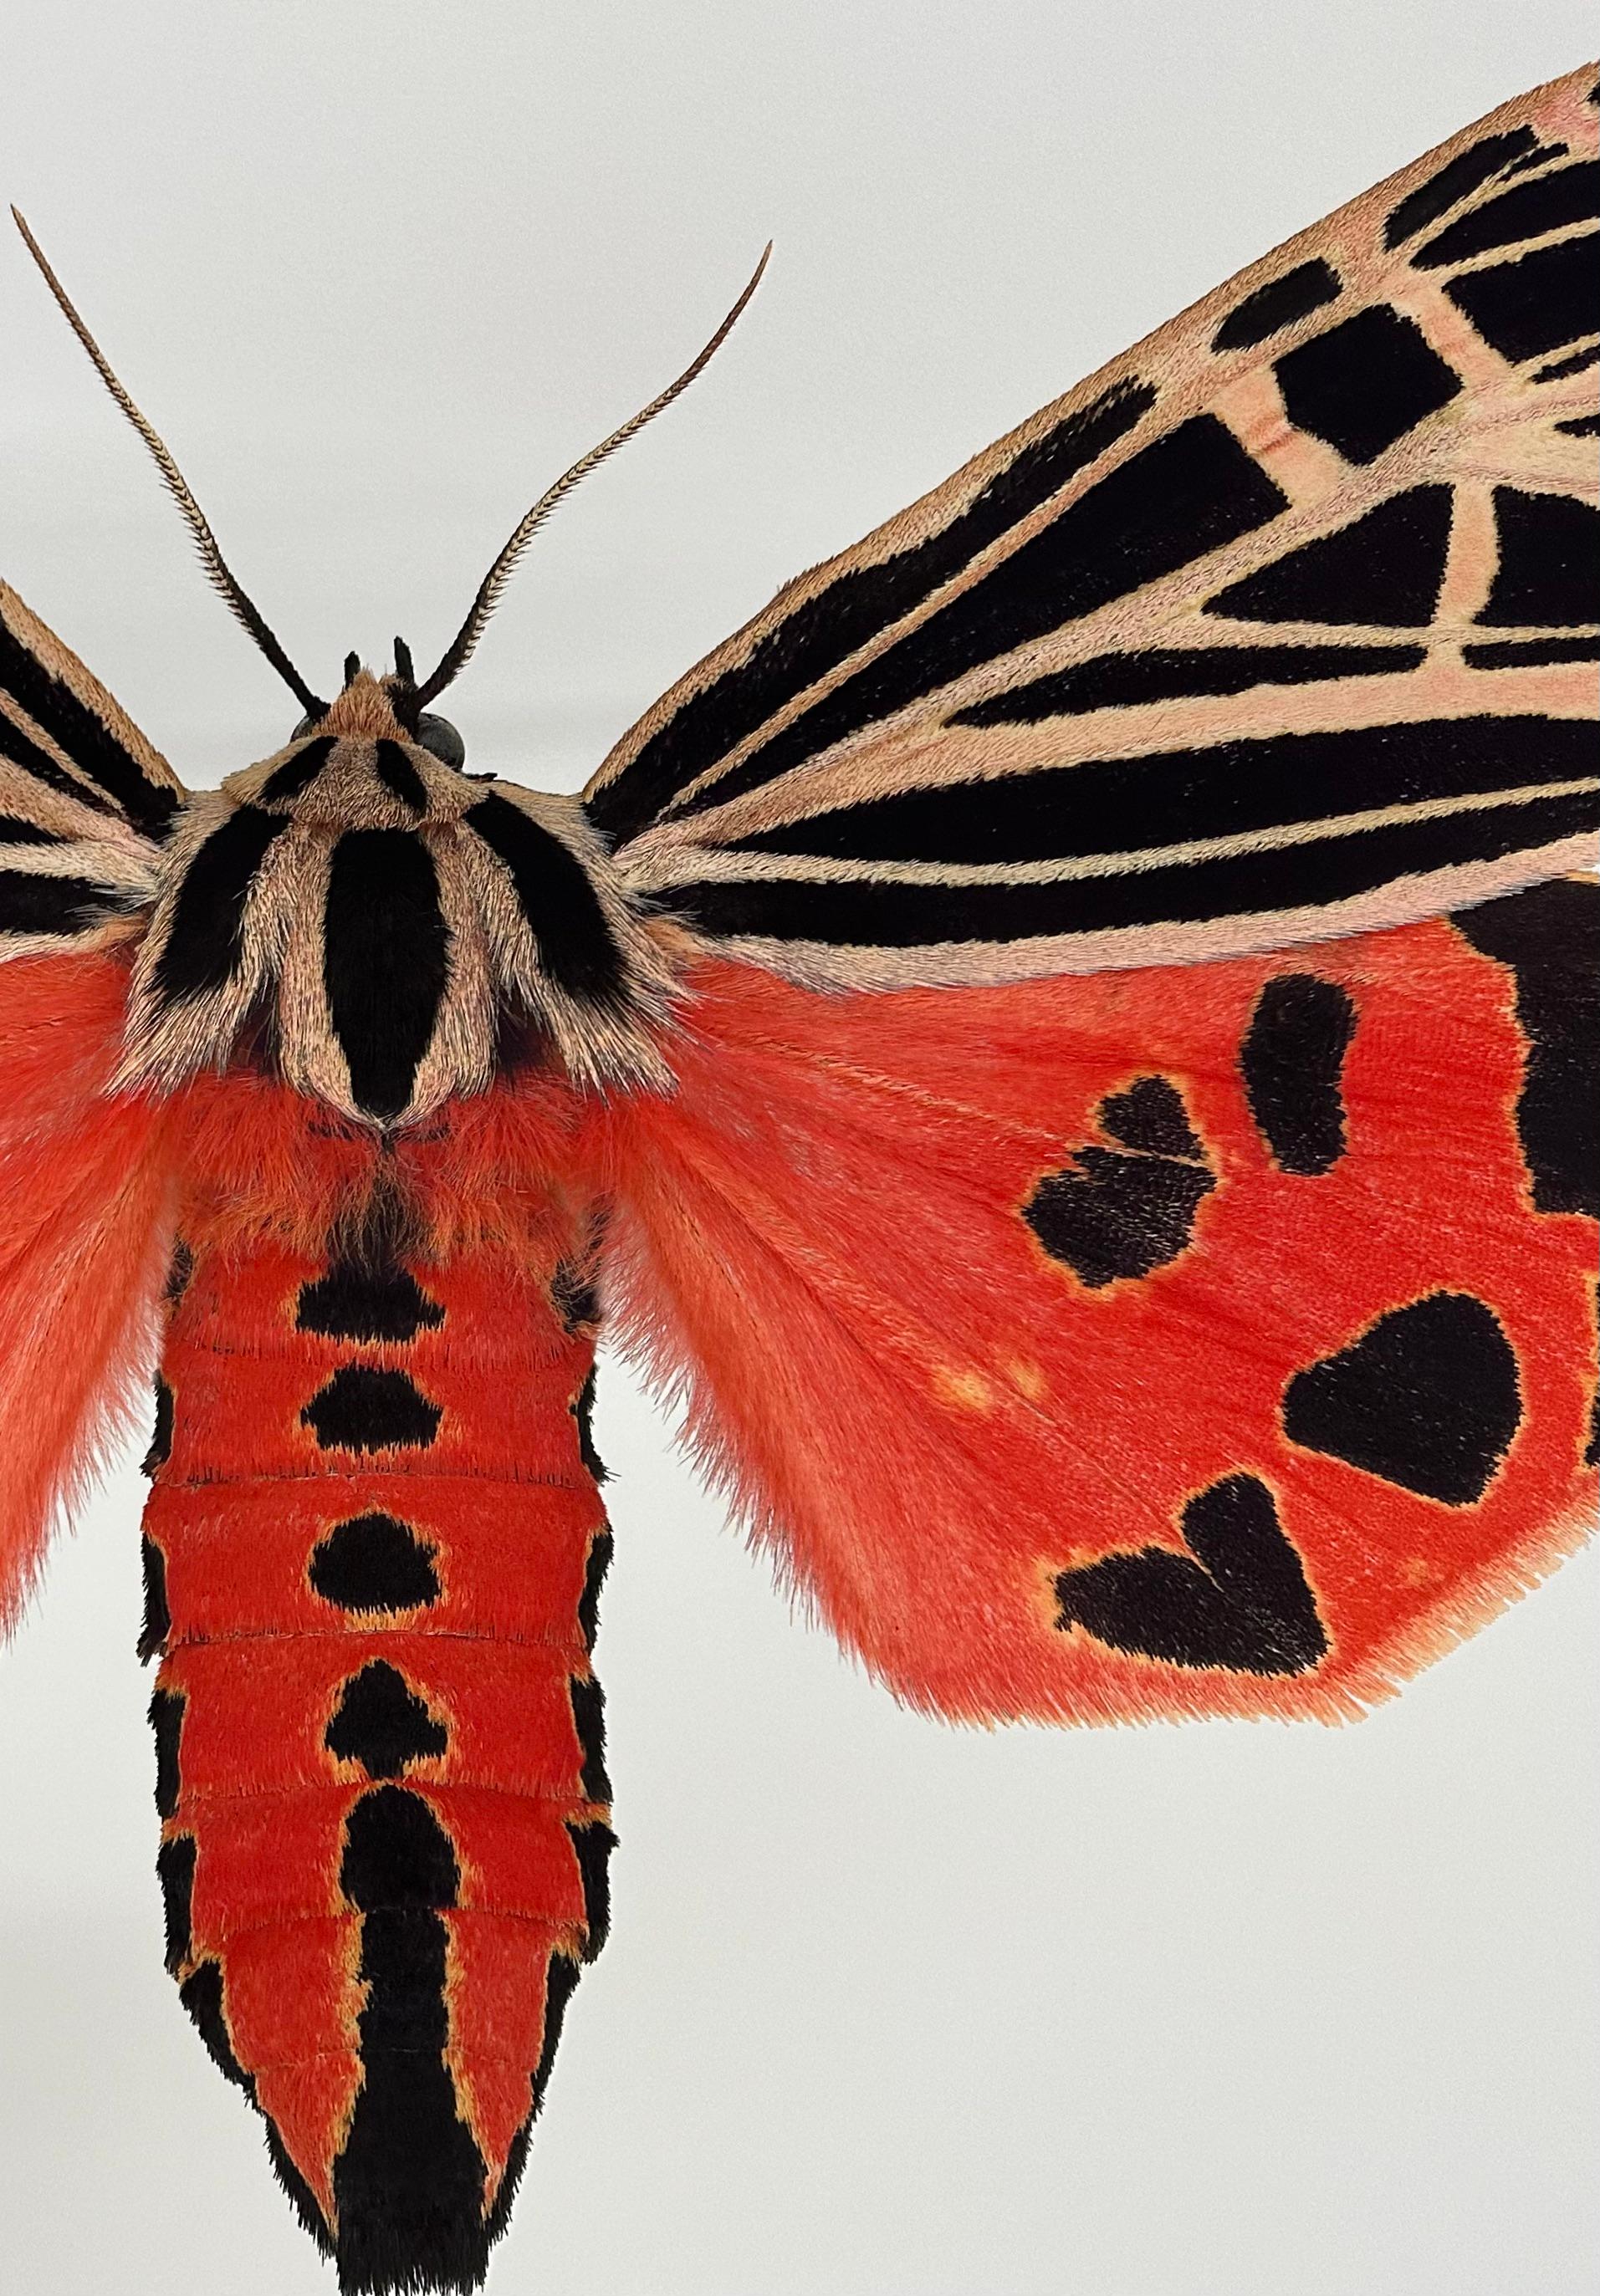 Grammia Virgo Weibchen, Korallenrot, Schwarzer Pfirsich Motte Insekt Flügel Natur Foto (Zeitgenössisch), Photograph, von Joseph Scheer